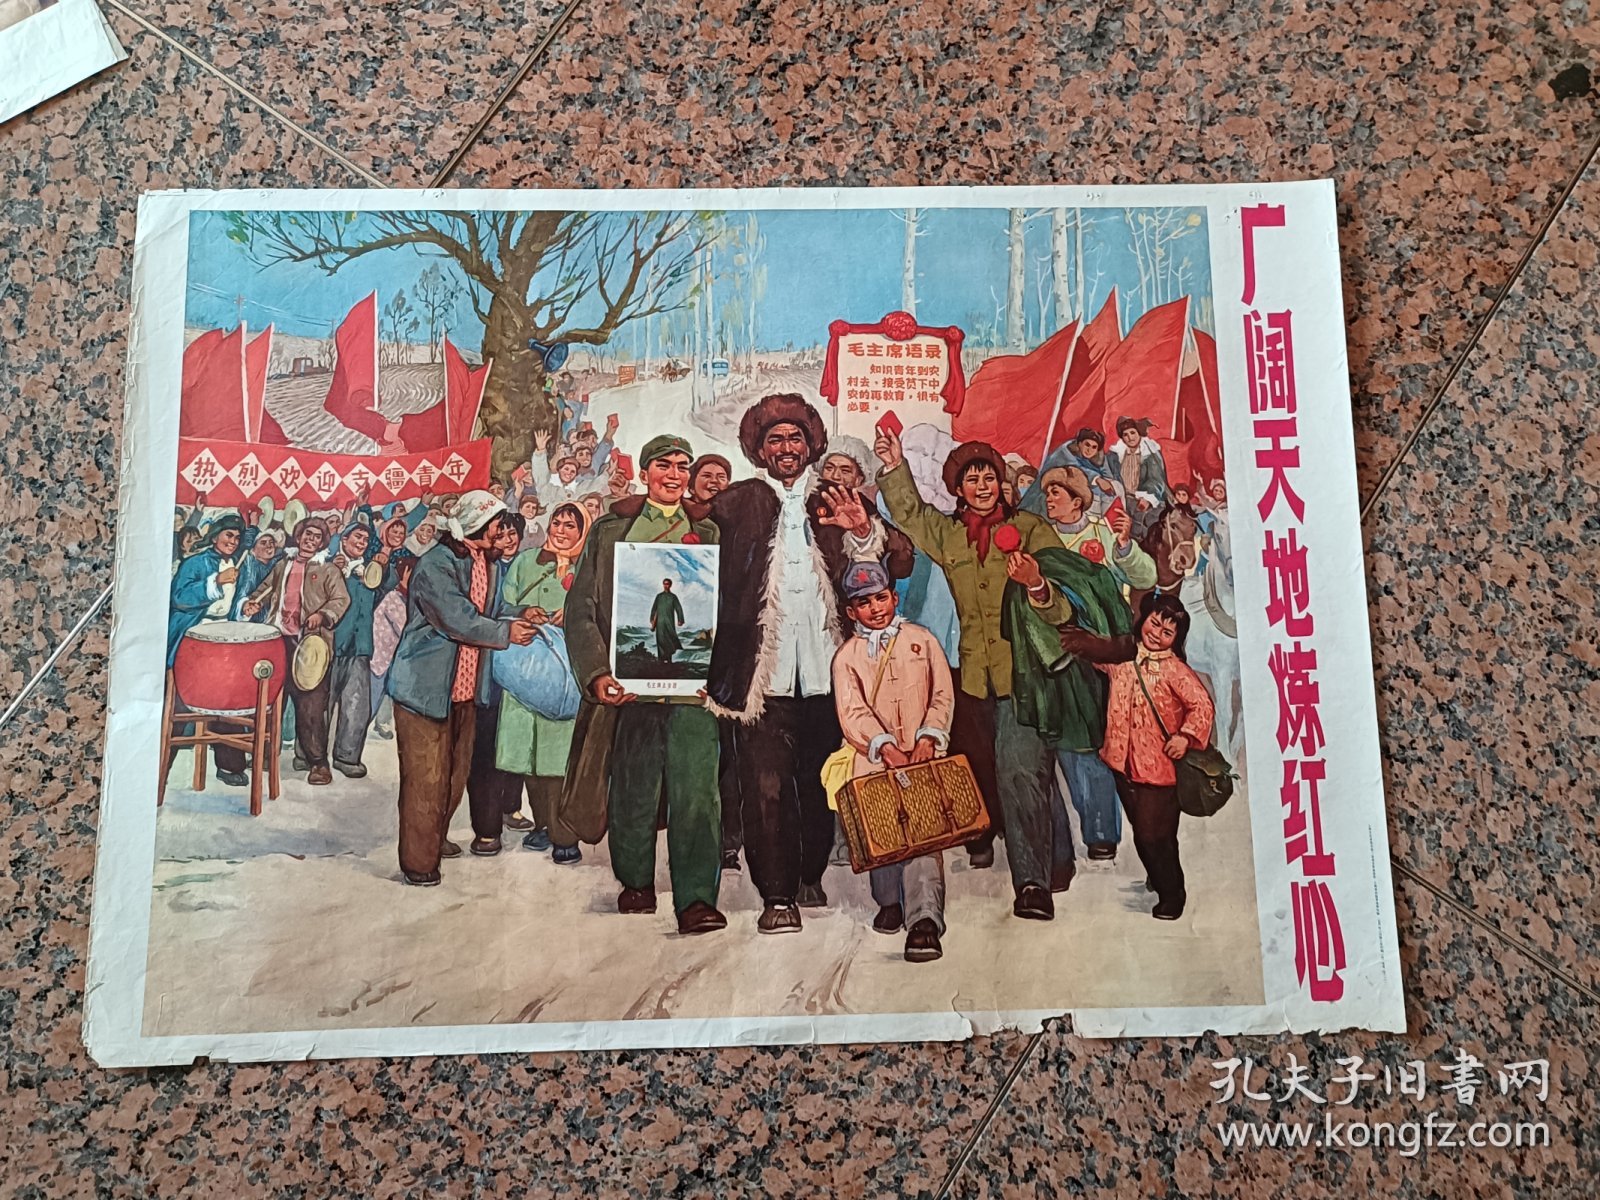 知新上2-16、知青题材-广阔天地练红心，上海市出版革命组.1970年8月1版3印。规格2开，9品。